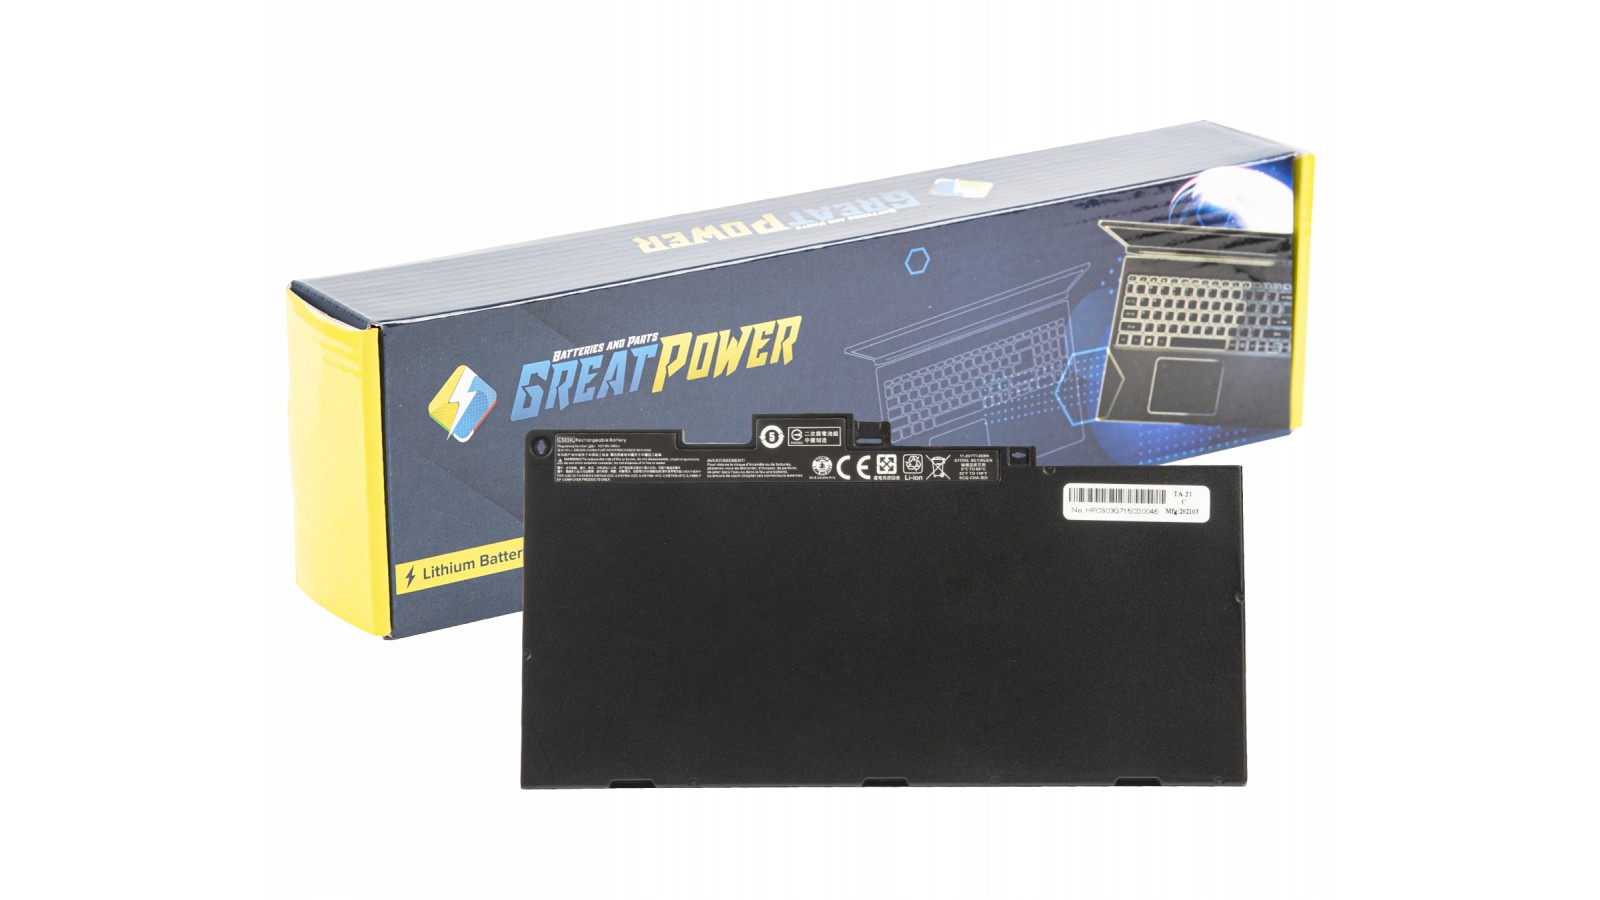 Batteria 46,5Wh compatibile con HP EliteBook 745 G3 - 755 G3 - 840 G3 - 840 G4